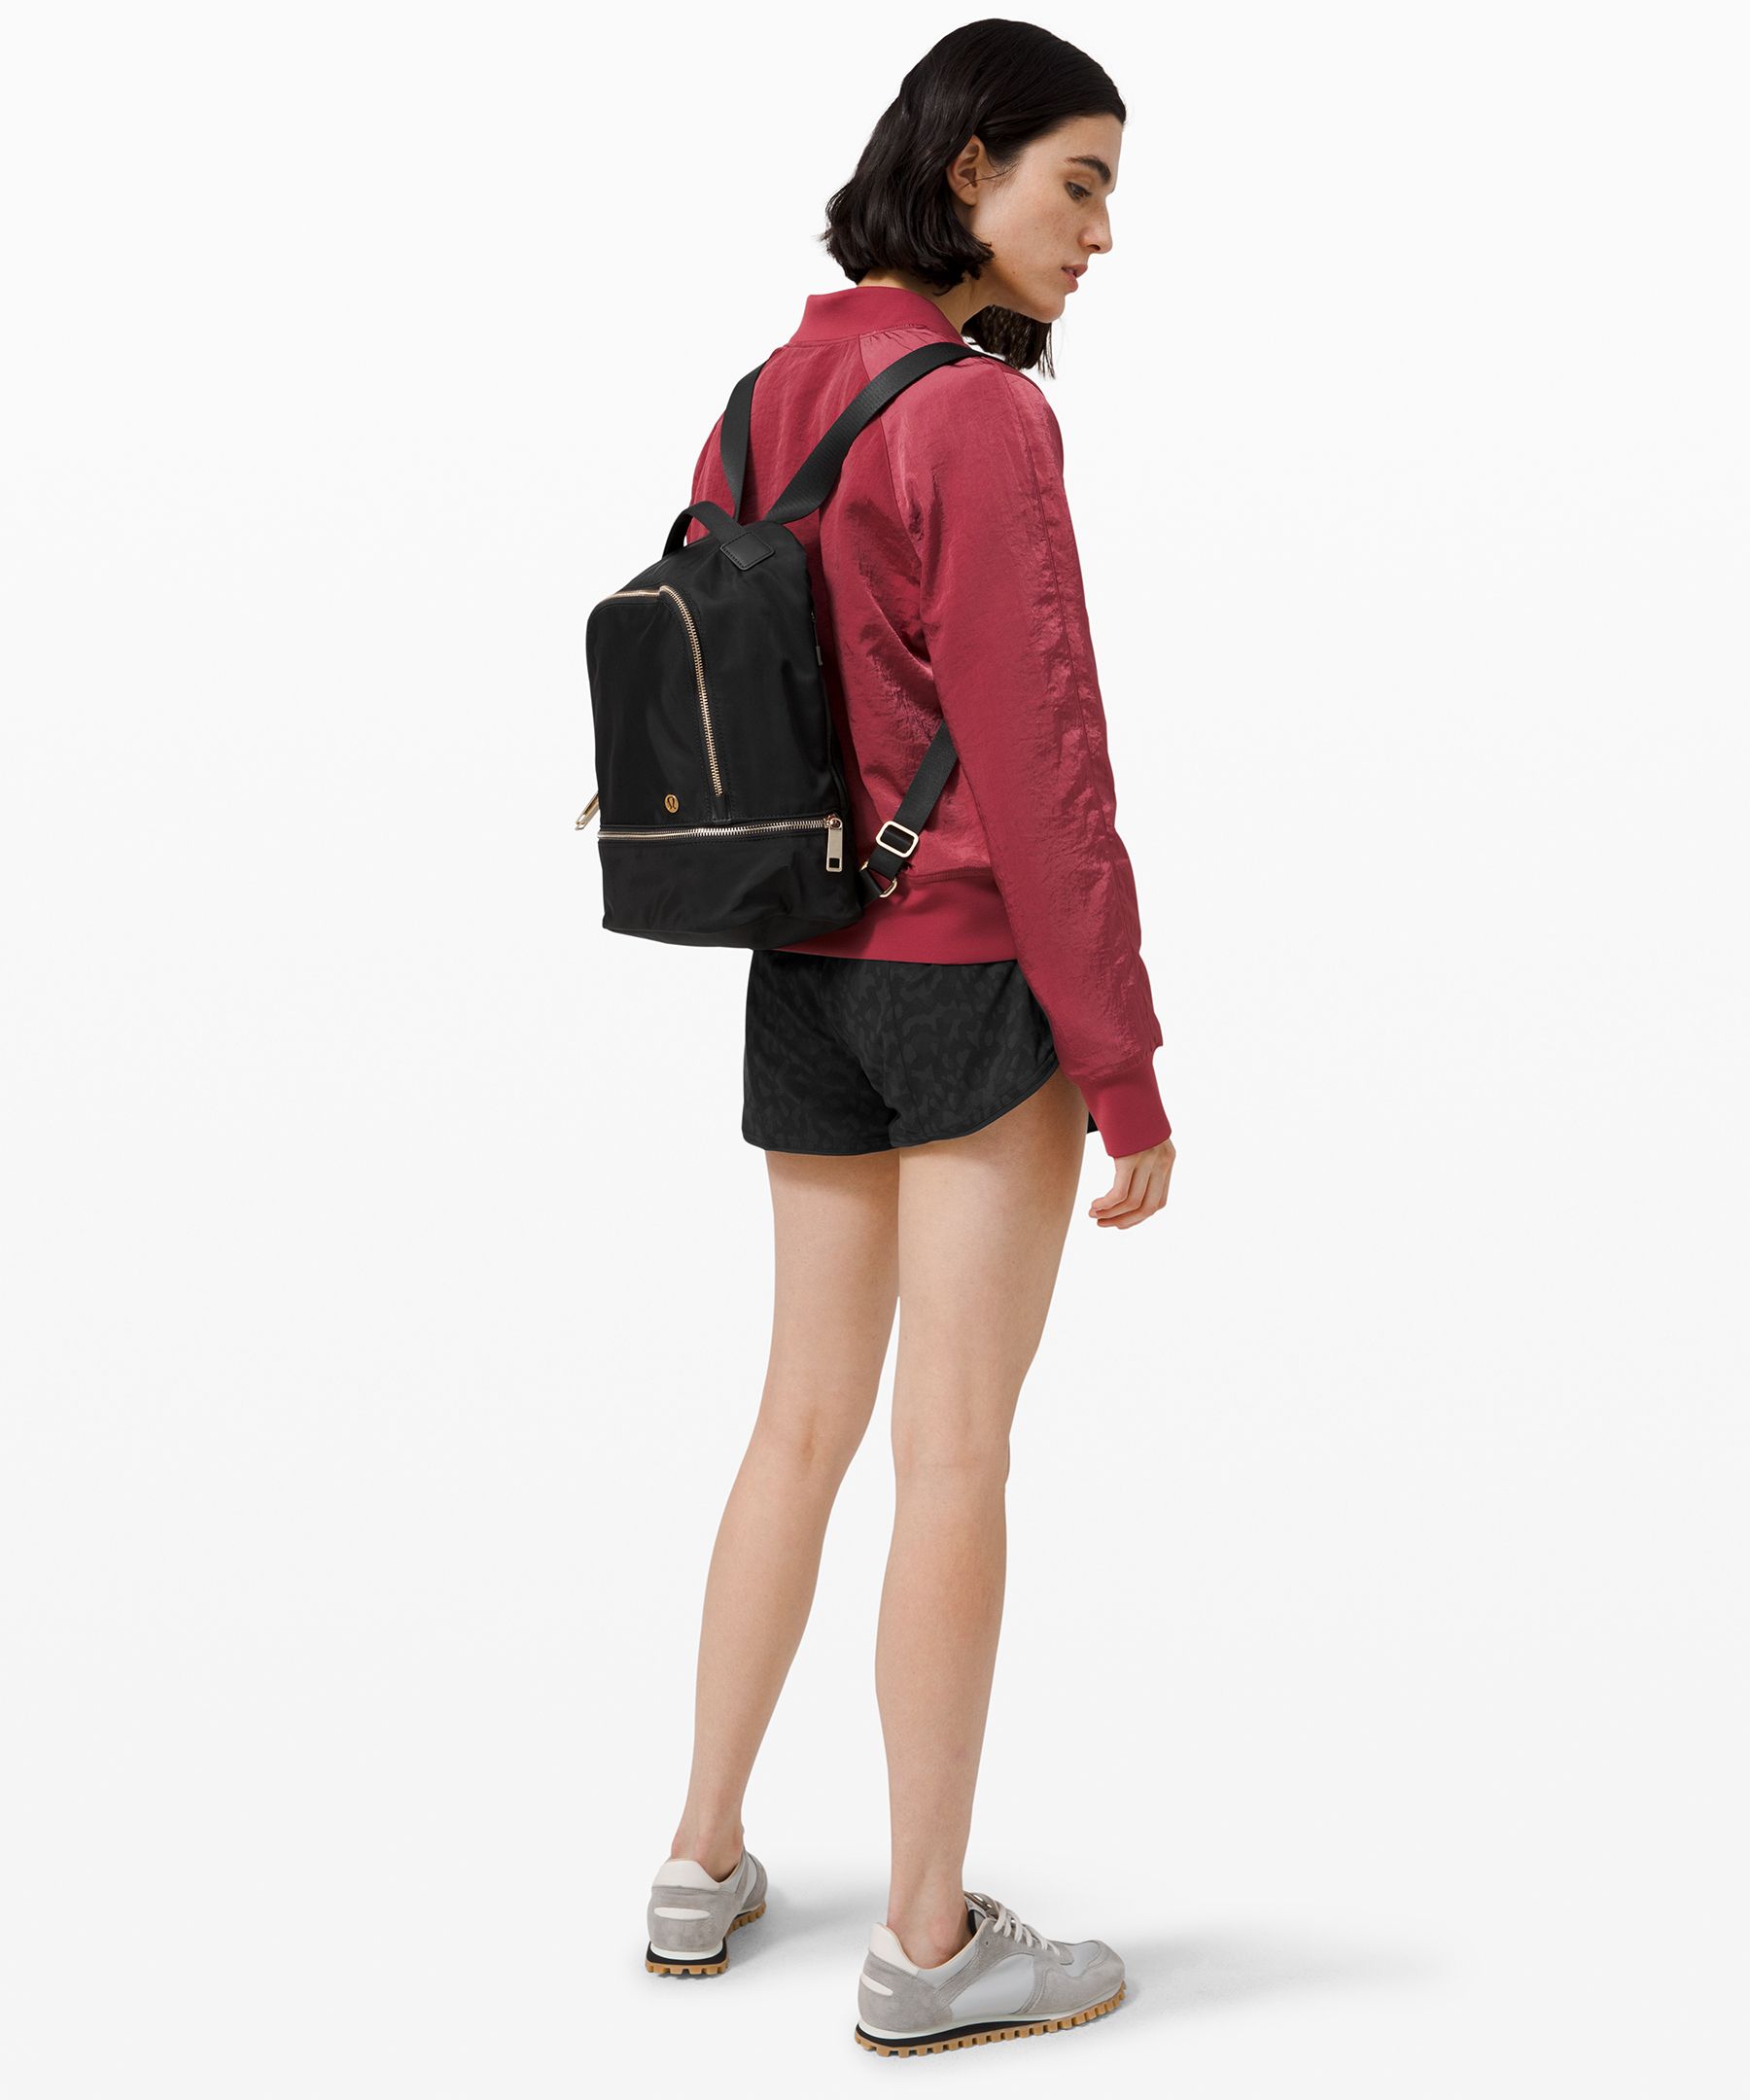 lululemon city adventurer backpack mini review